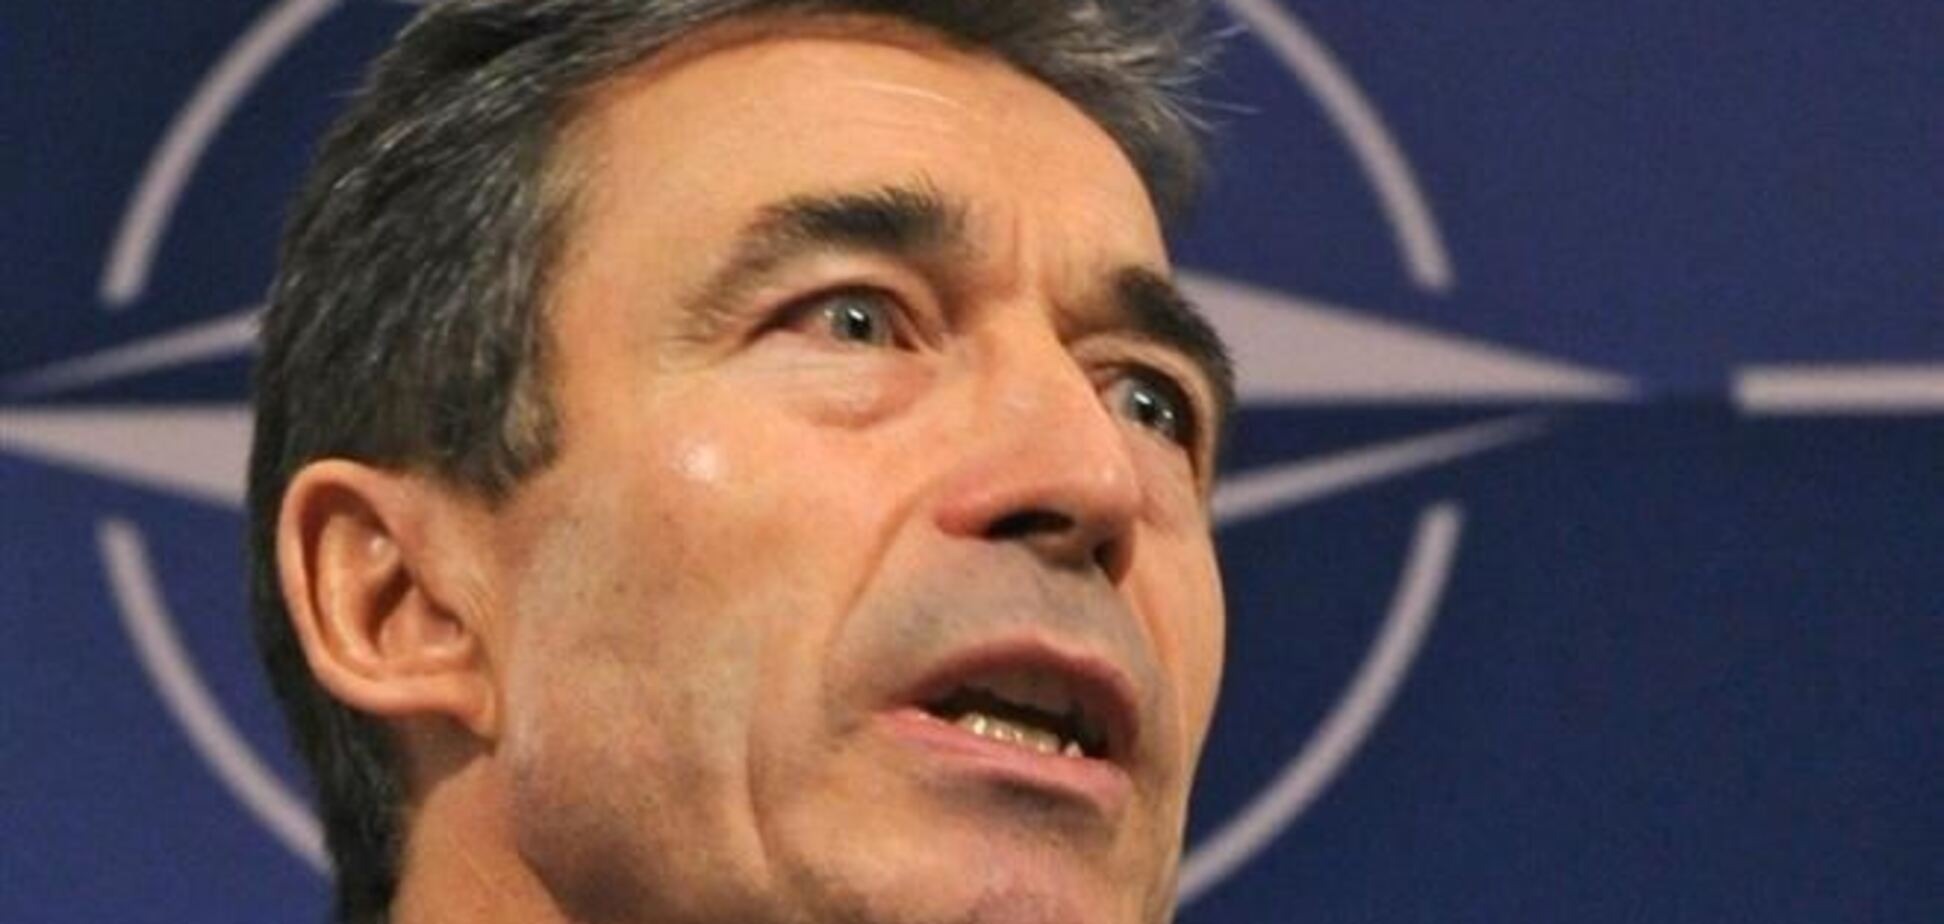 НАТО поки не планує військових дій в Україні - глава альянсу